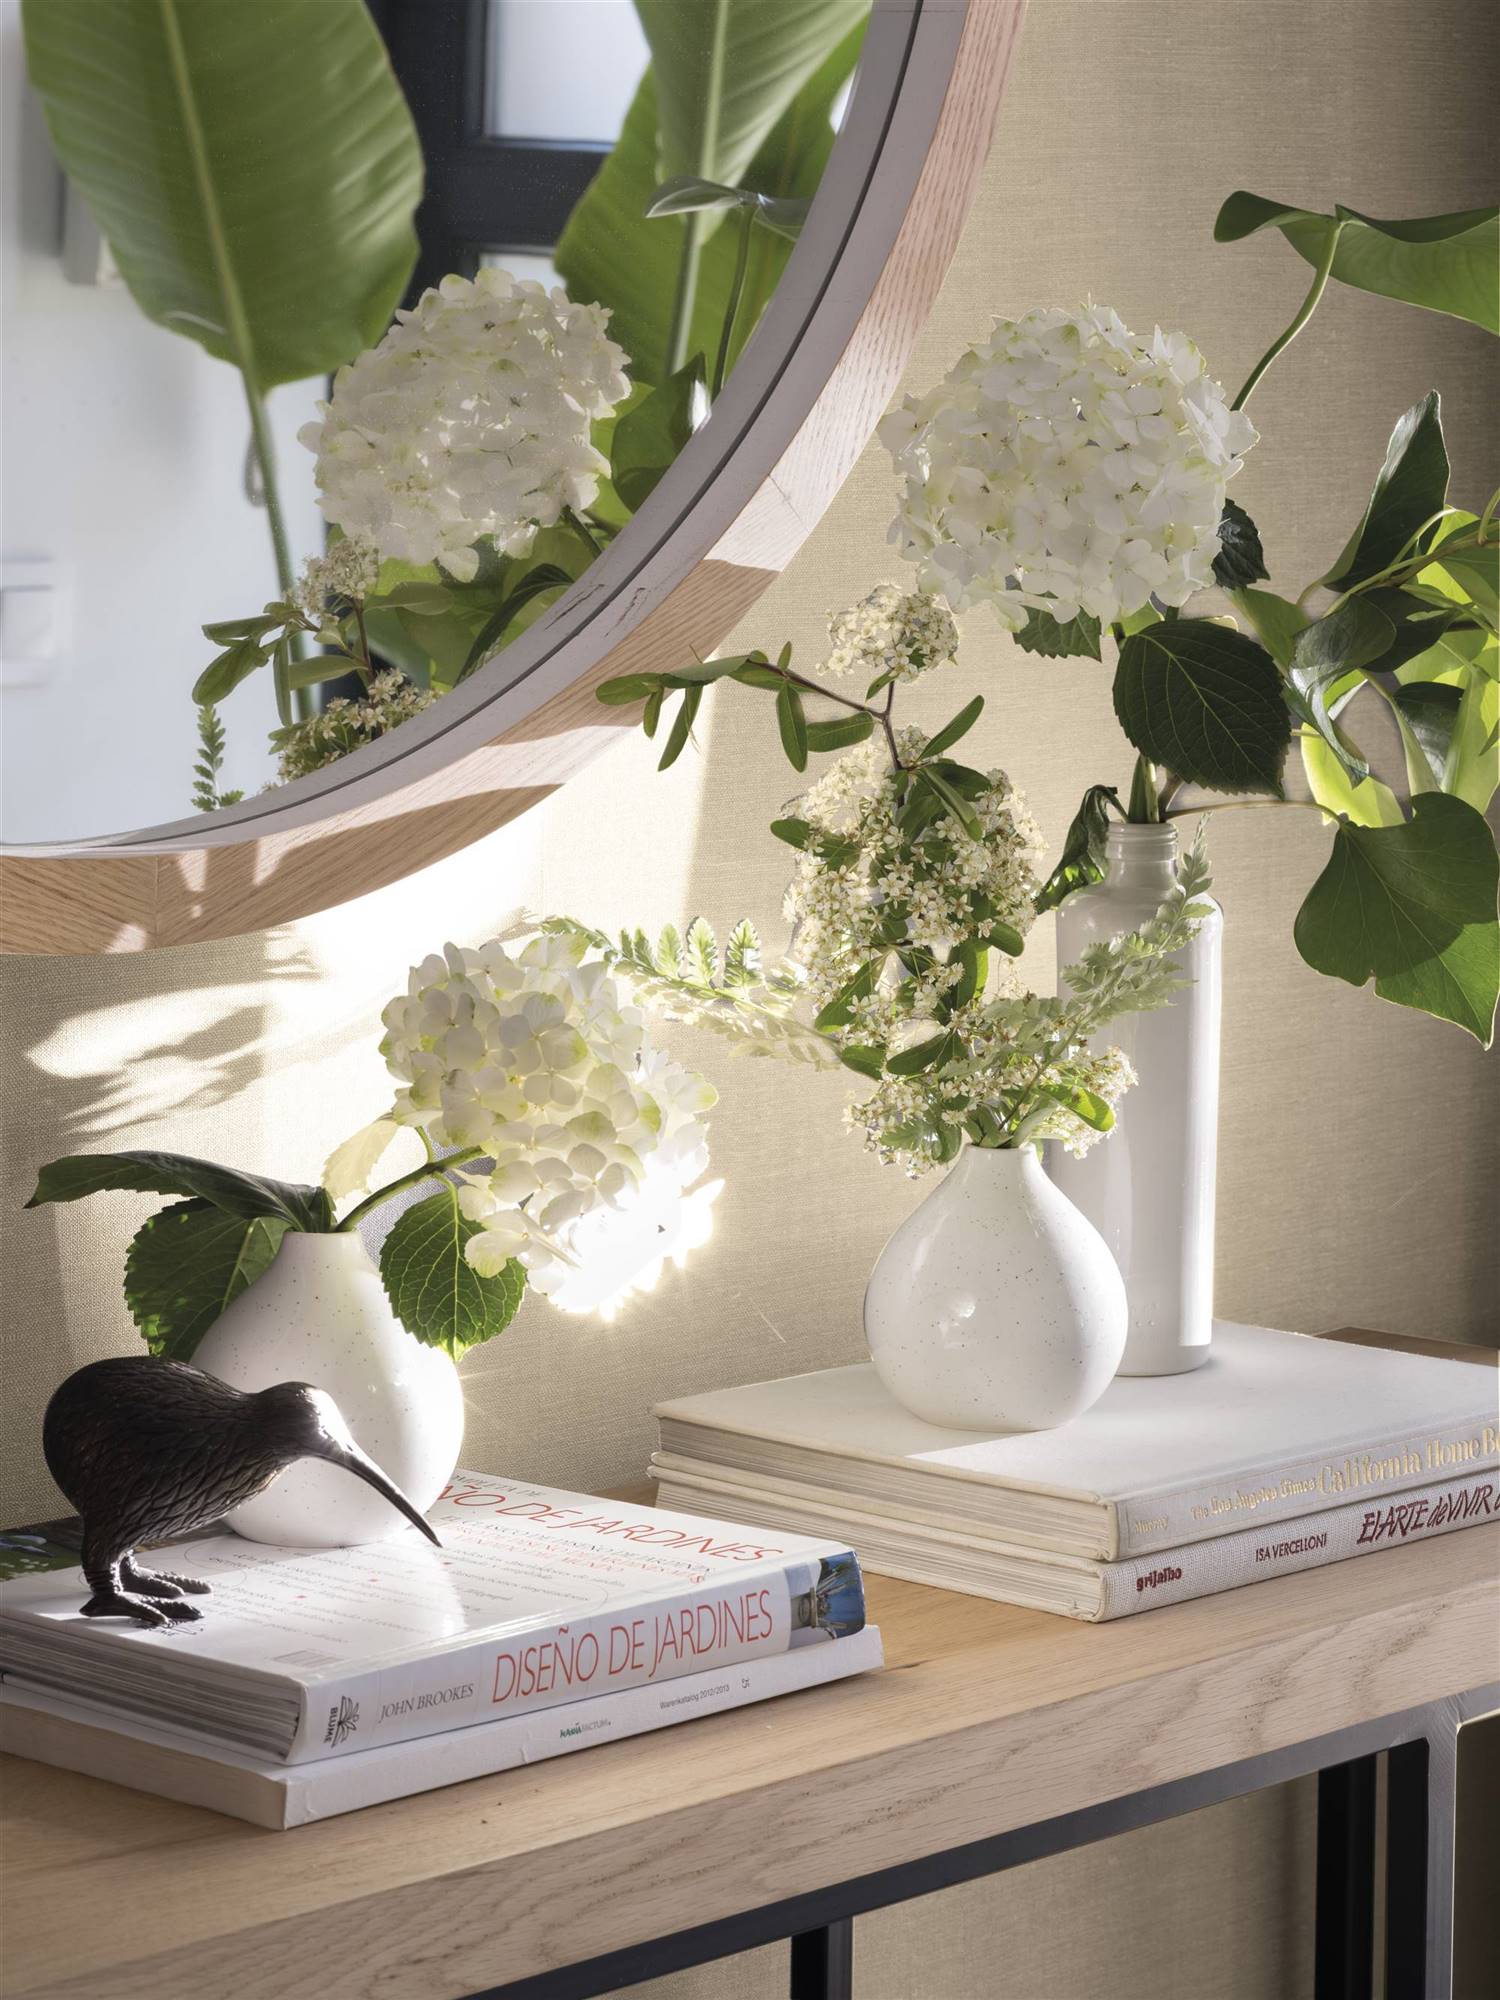 Detalles de recibidor claro con espejo redondo, plantas y libros.